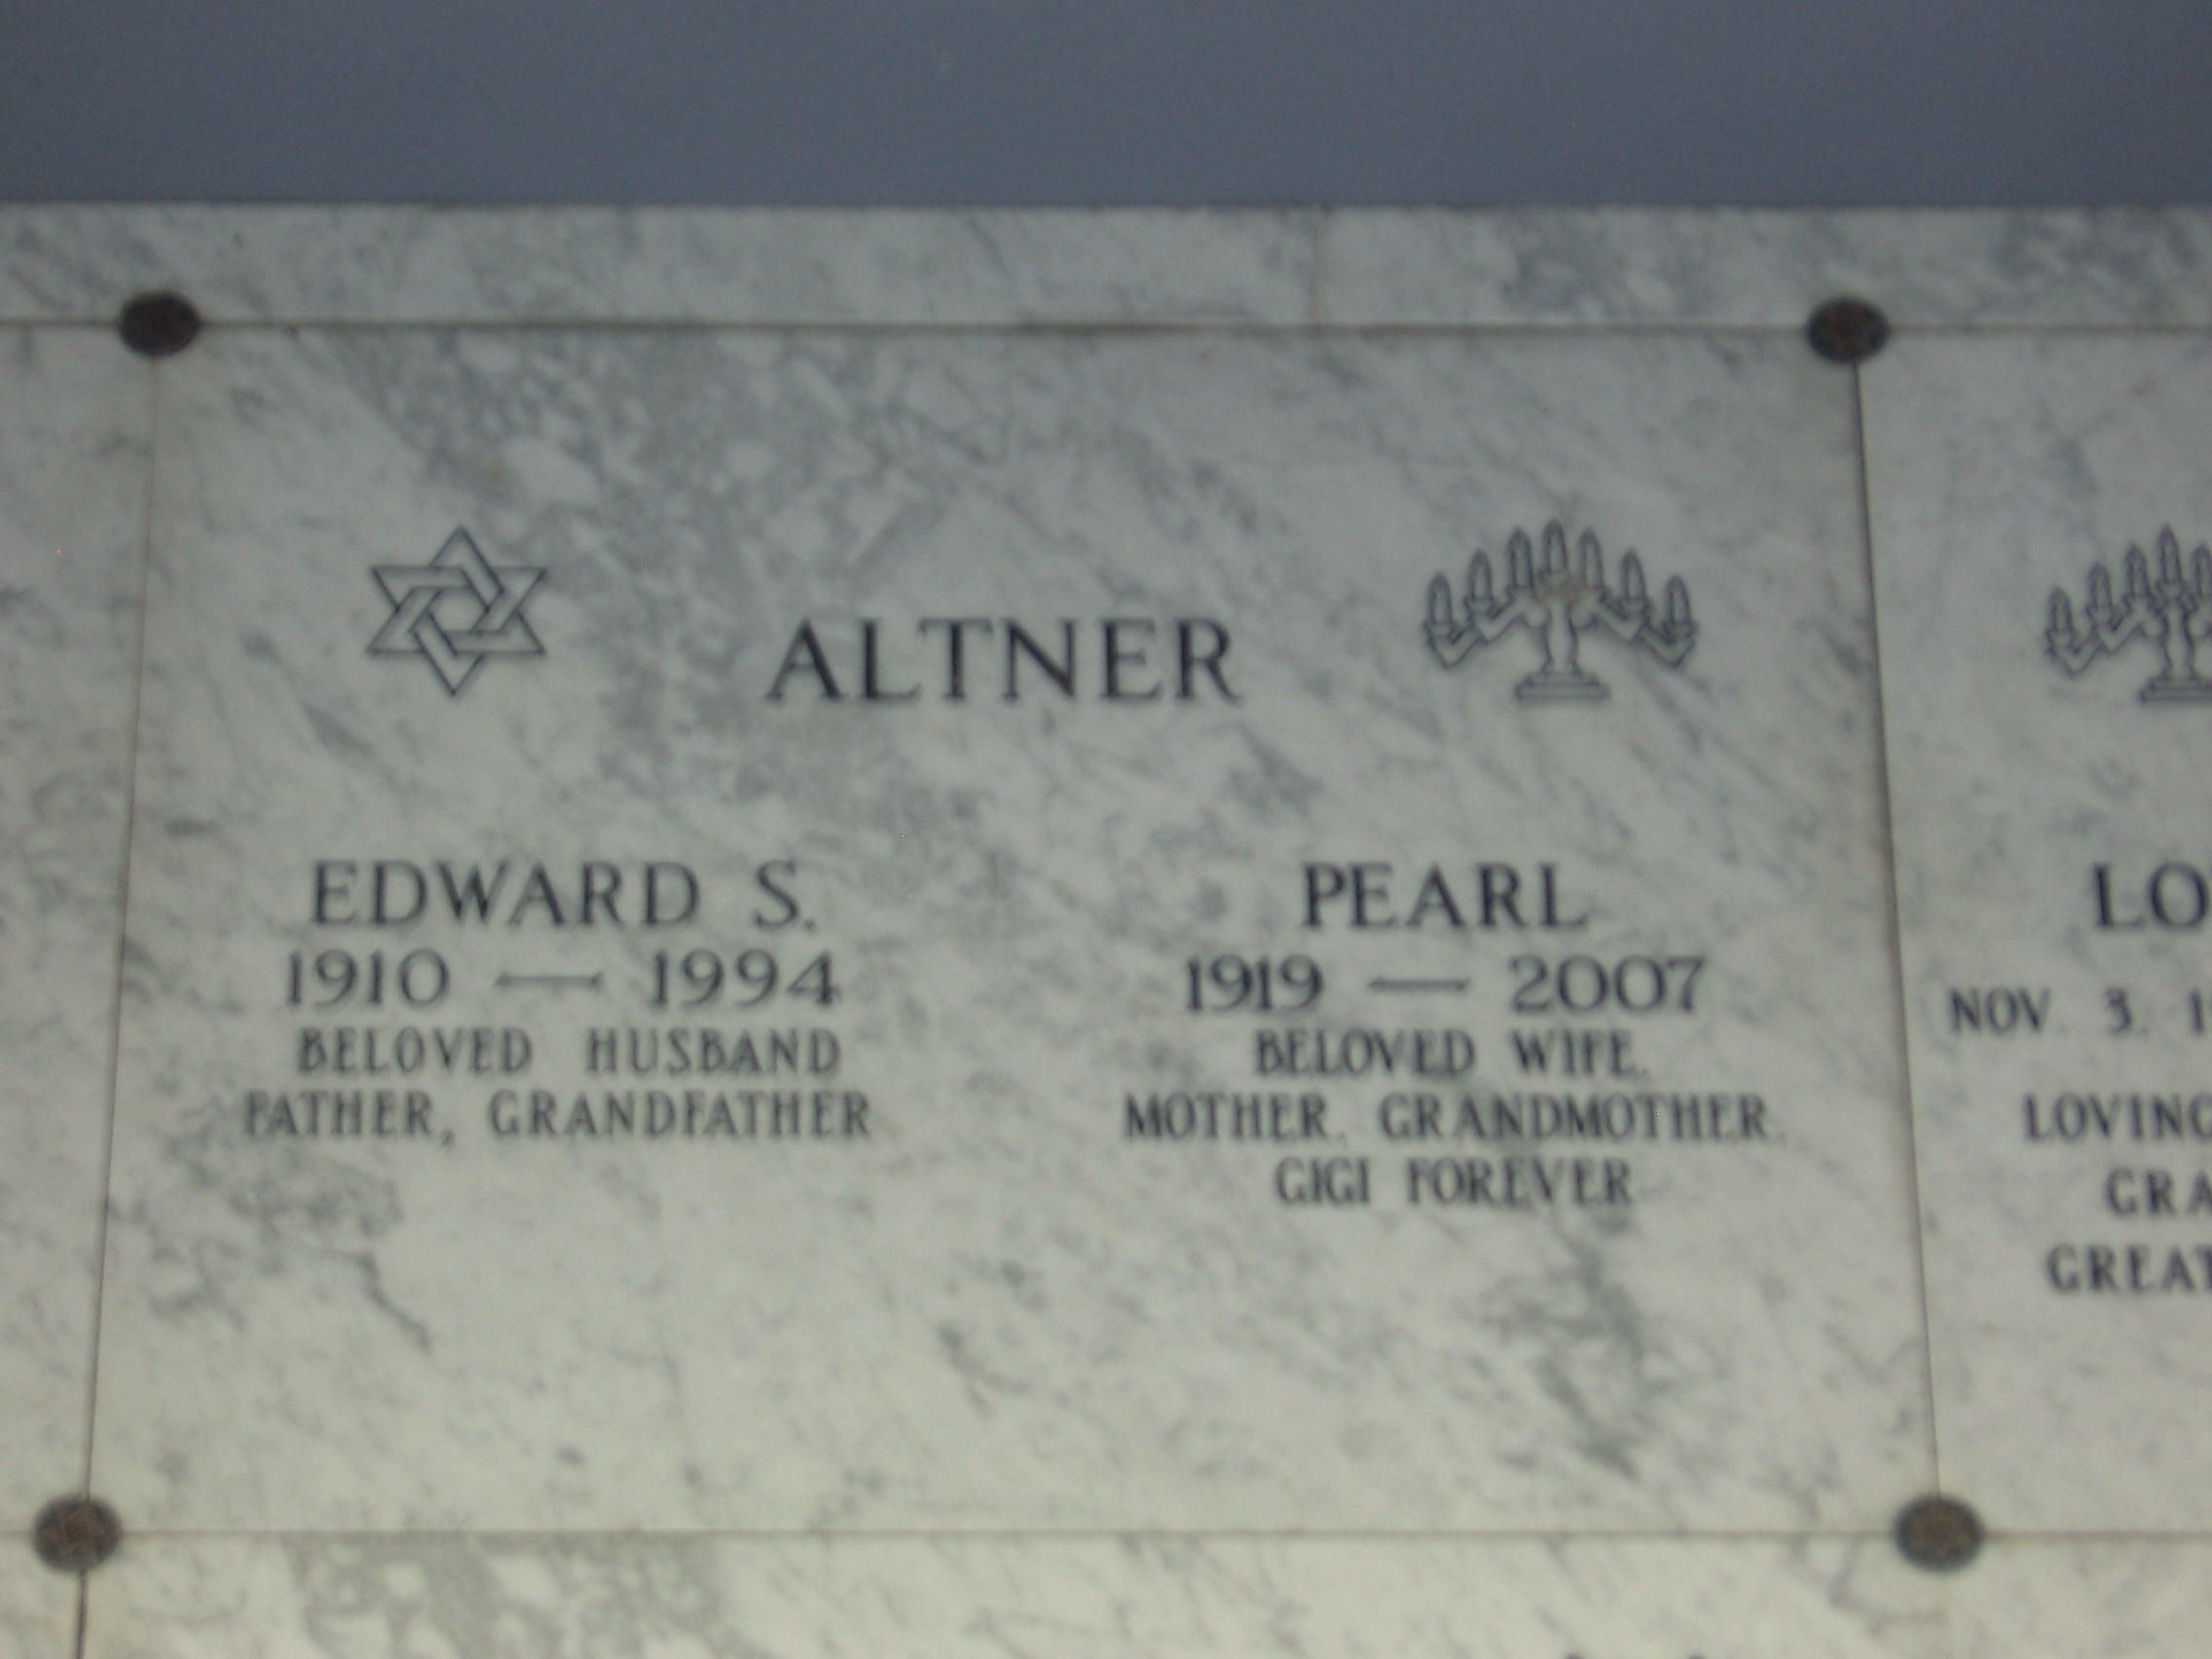 Edward S Altner